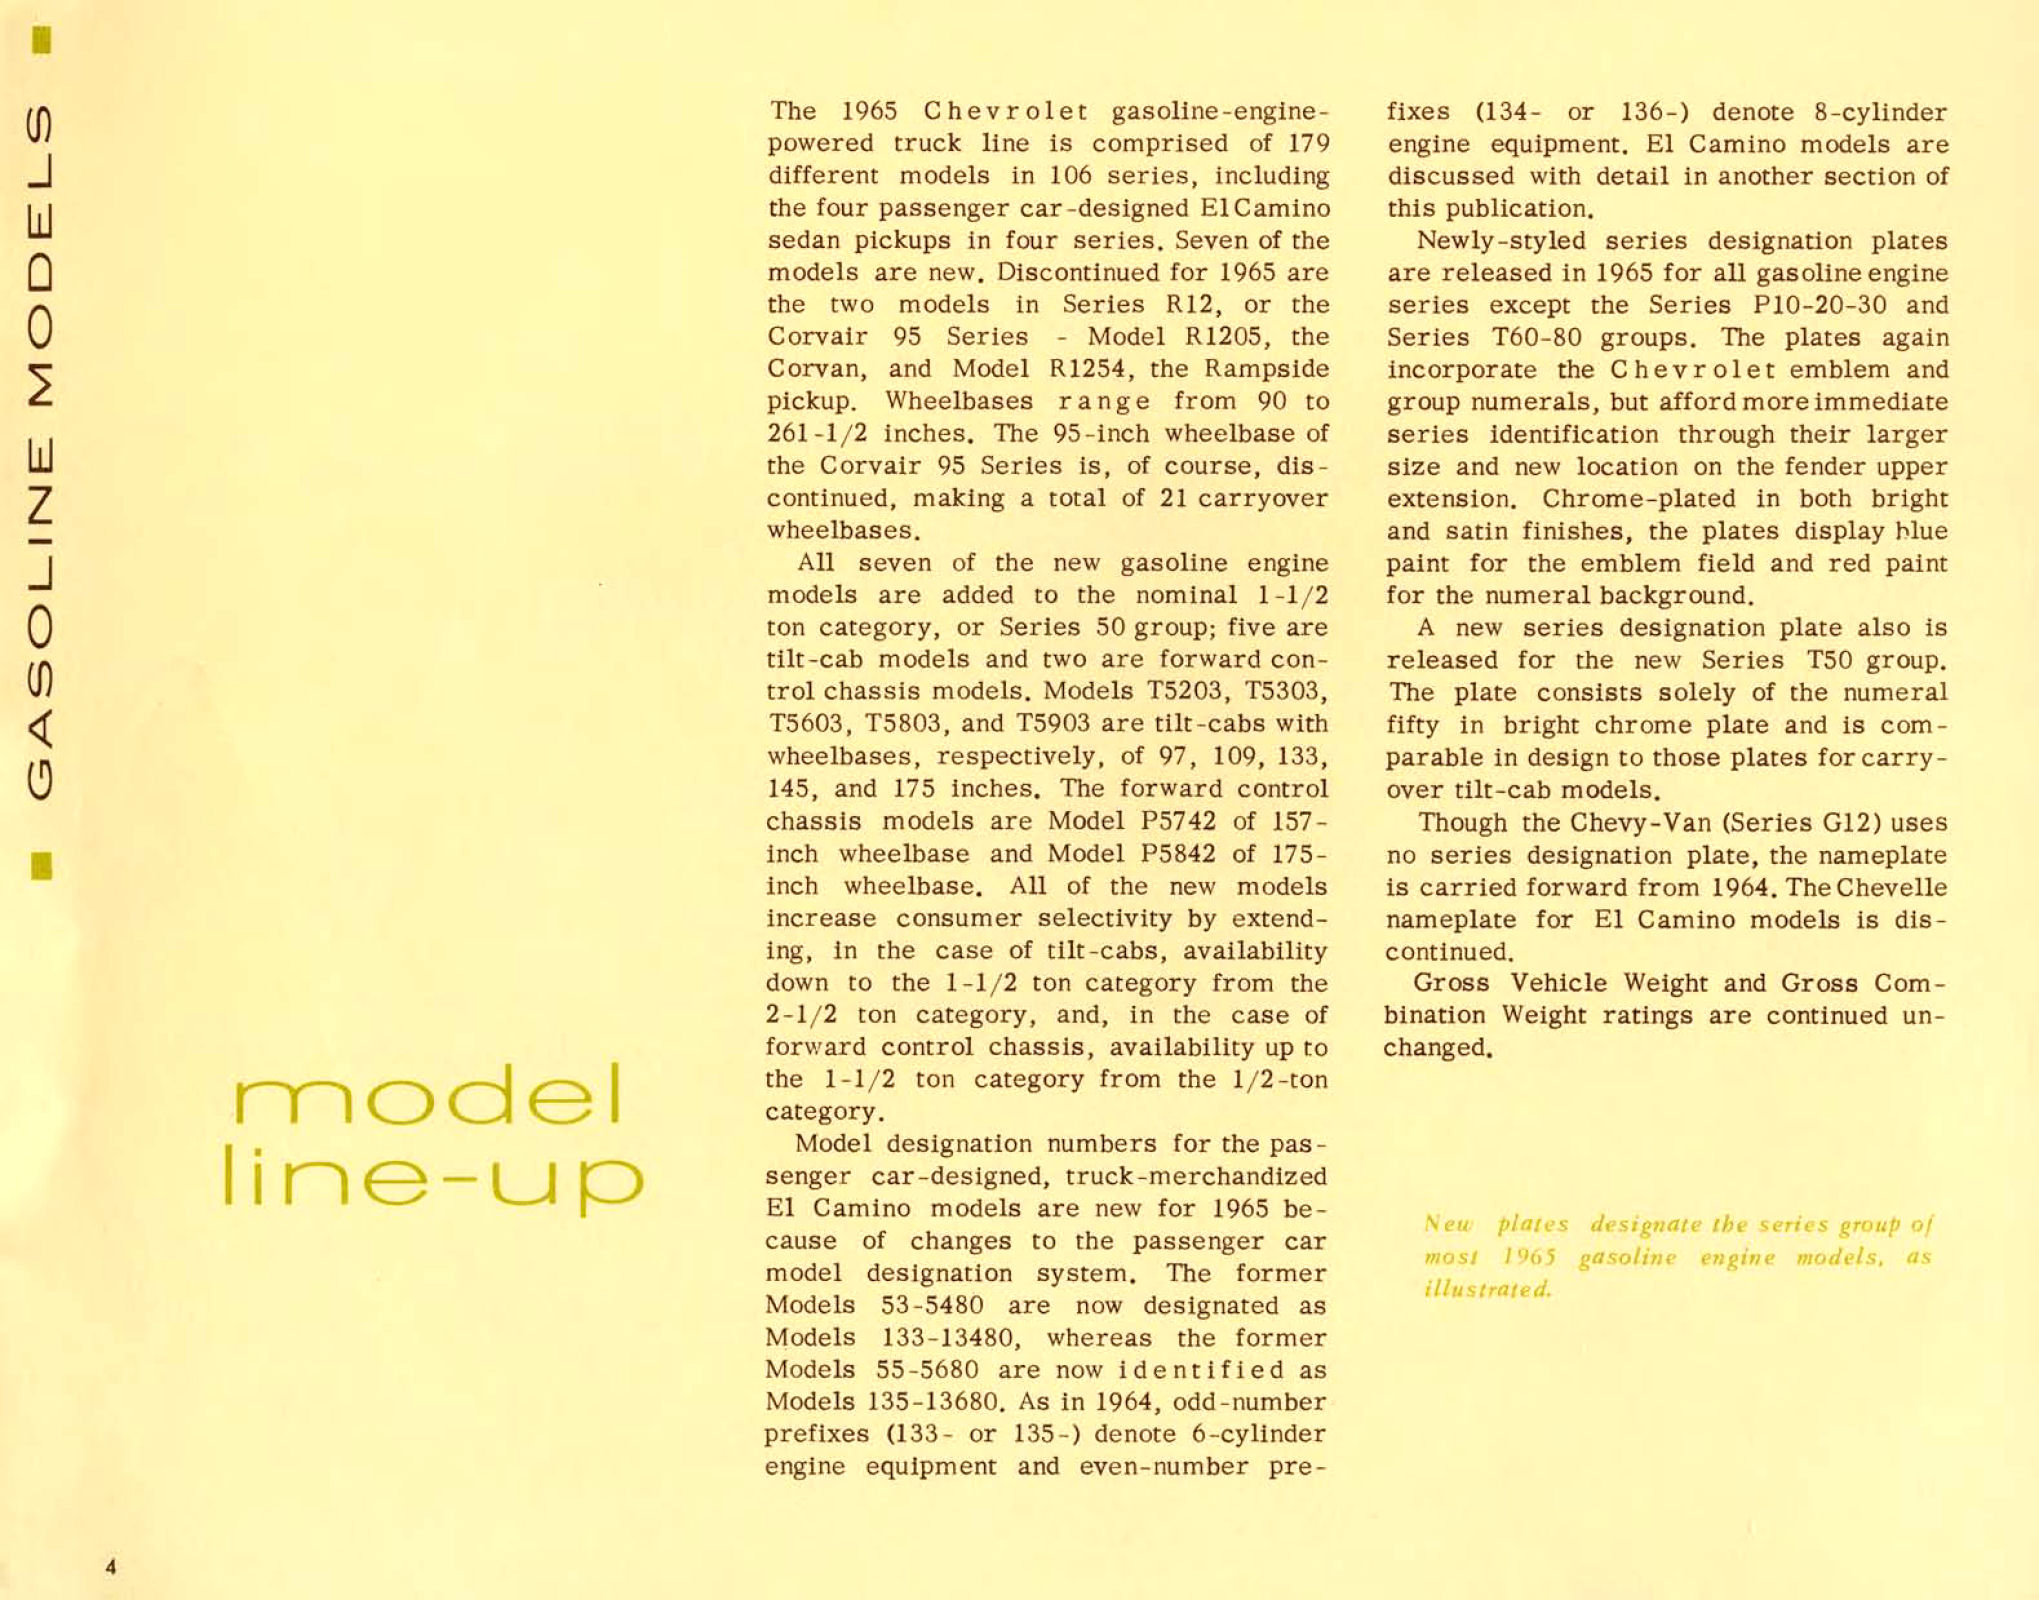 1965_Chevrolet_Truck_Engineering_Features-04